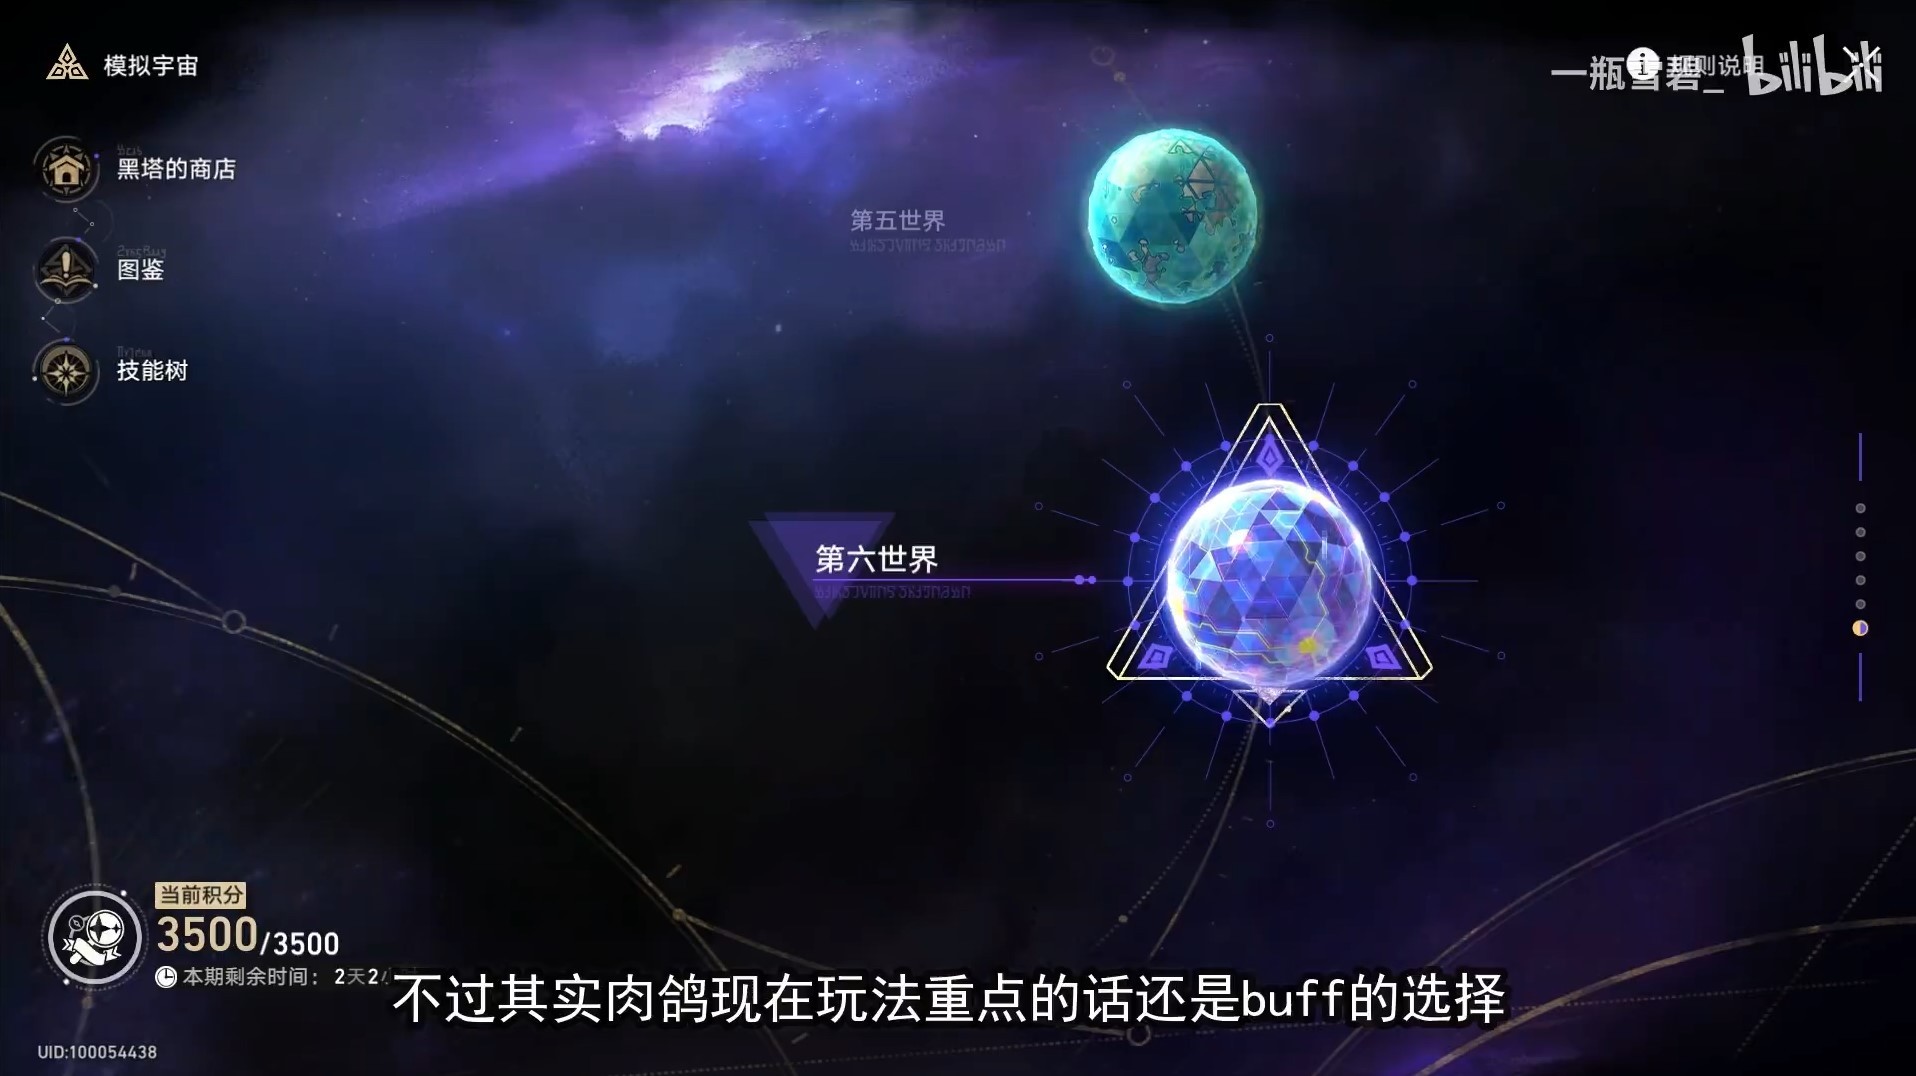 《崩壞星穹鐵道》模擬宇宙各流派通關合集 BUFF選擇與角色玩法講解_觀前提示